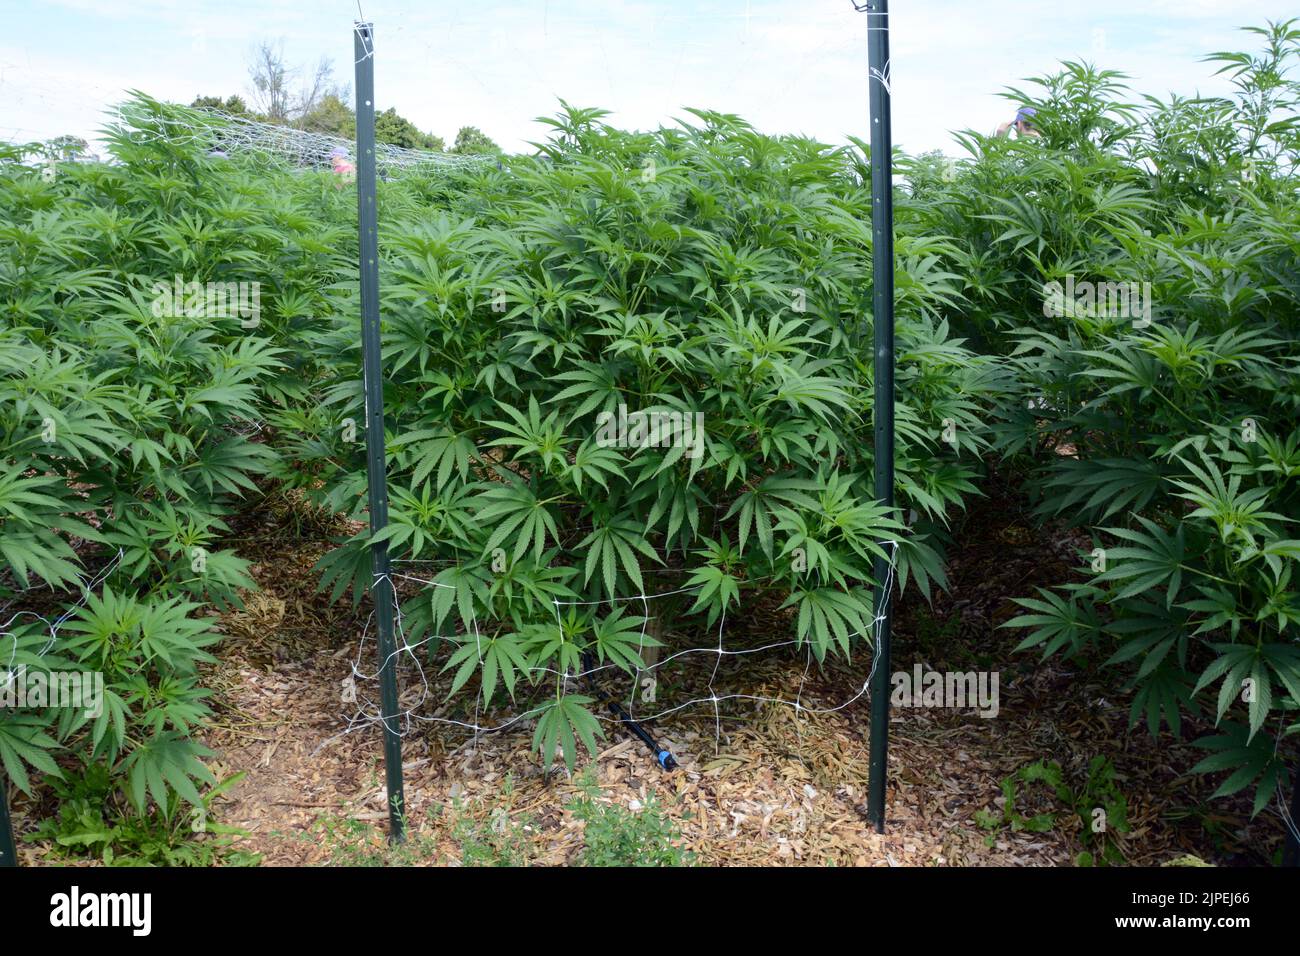 Plantas recreativas legales de marihuana o cannabis que se cultivan al aire libre en una granja regenerativa sostenible cerca de la ciudad de Creemore, Ontario, Canadá. Foto de stock